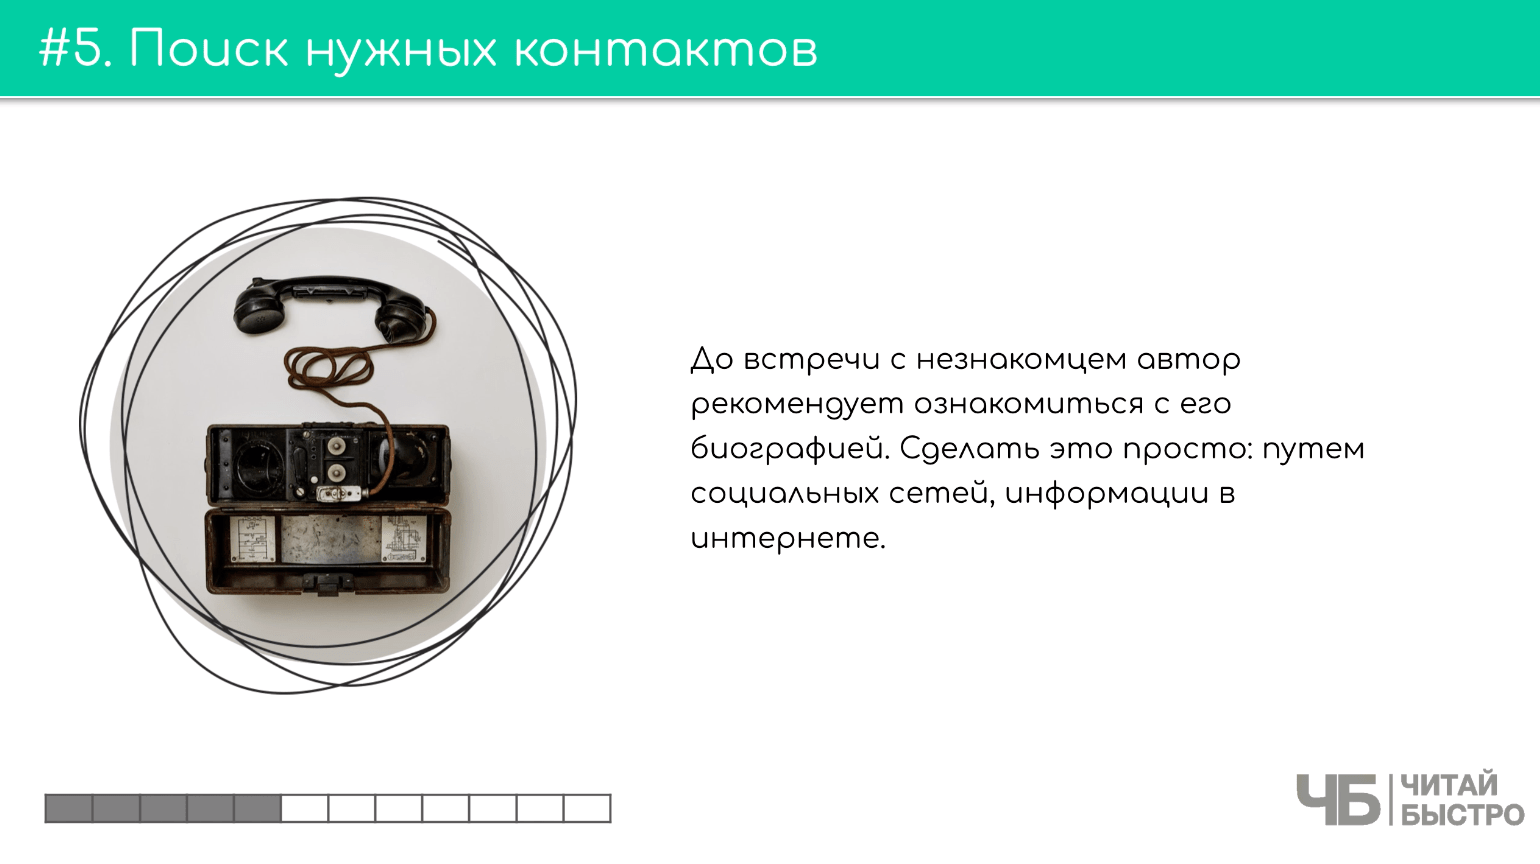 На этом слайде изображен тезис о поиске нужных контактов и иллюстрация старинного телефона.